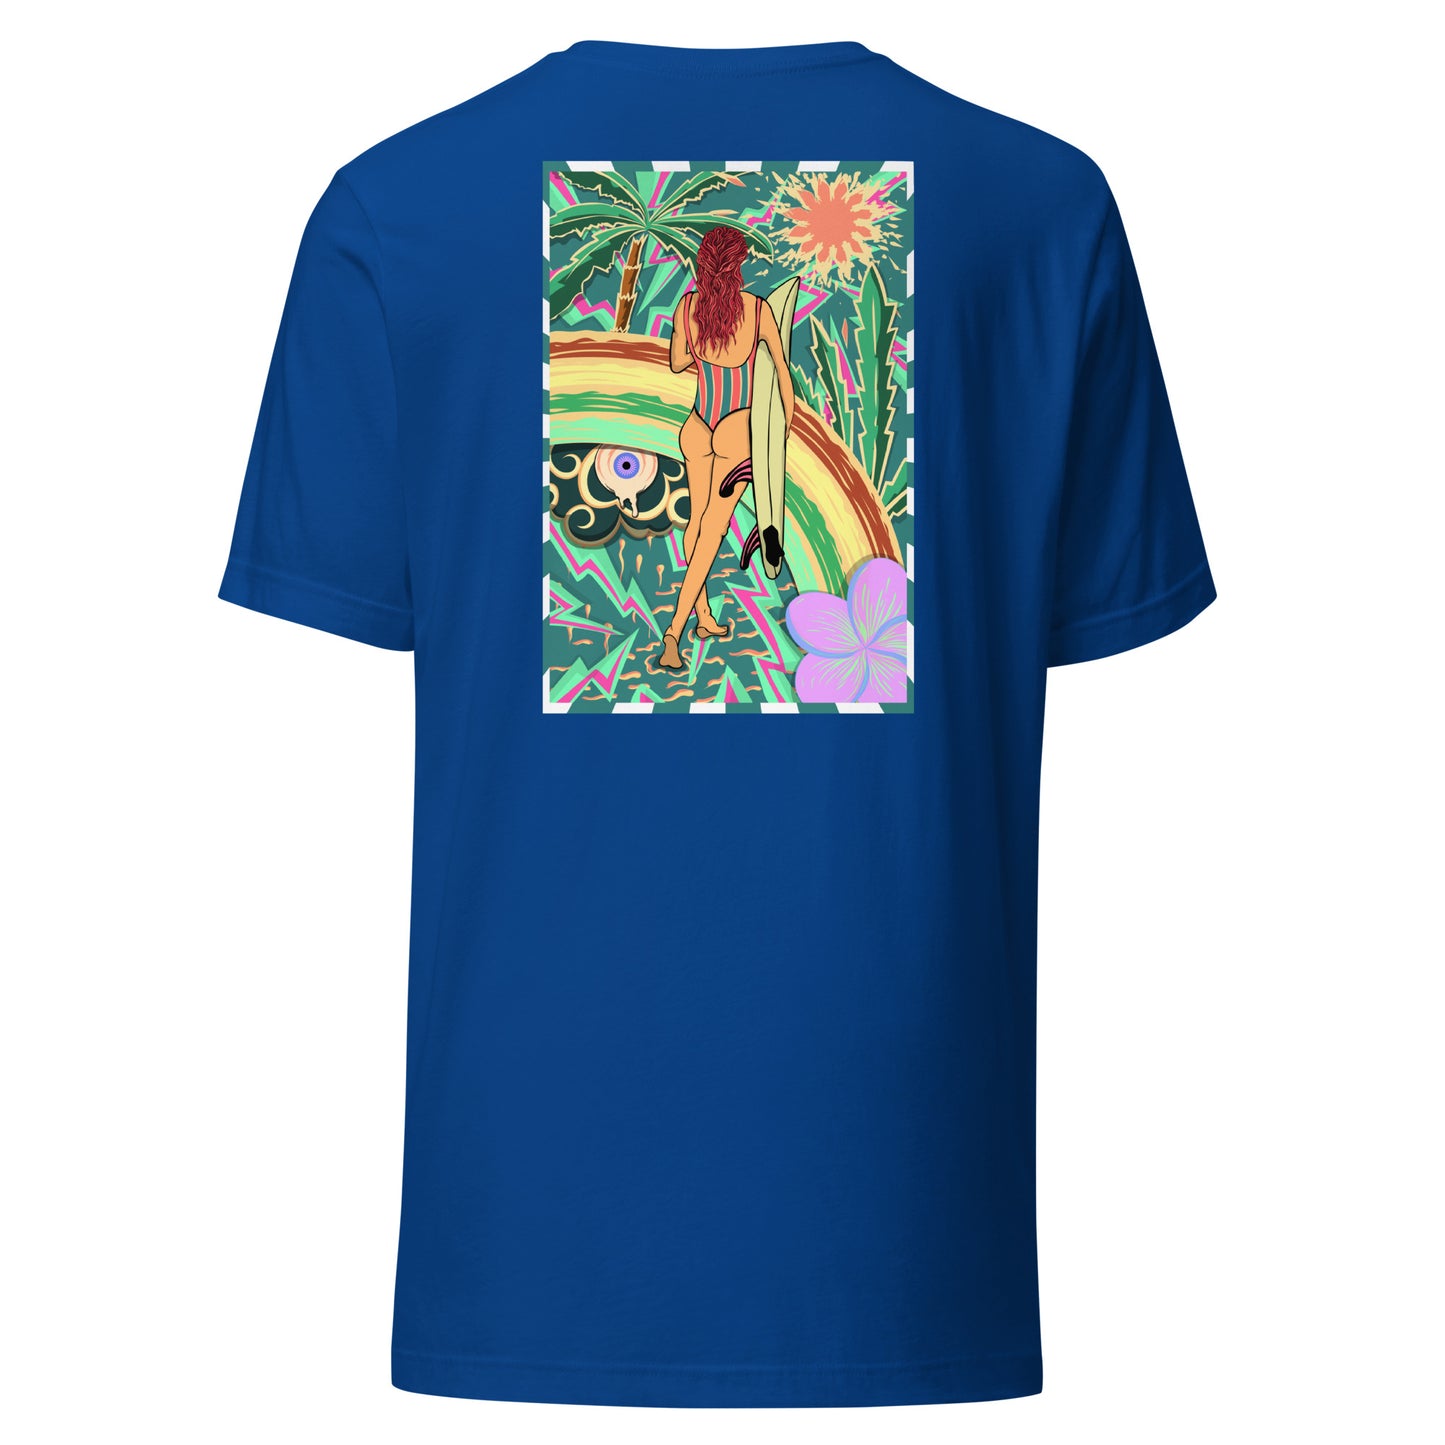 T-shirt surf vintage Walk Of Life surfeuse coloré hippie avec des palmier, fleur, arc en ciel et œil psychédélique. Tshirt dos bleu 